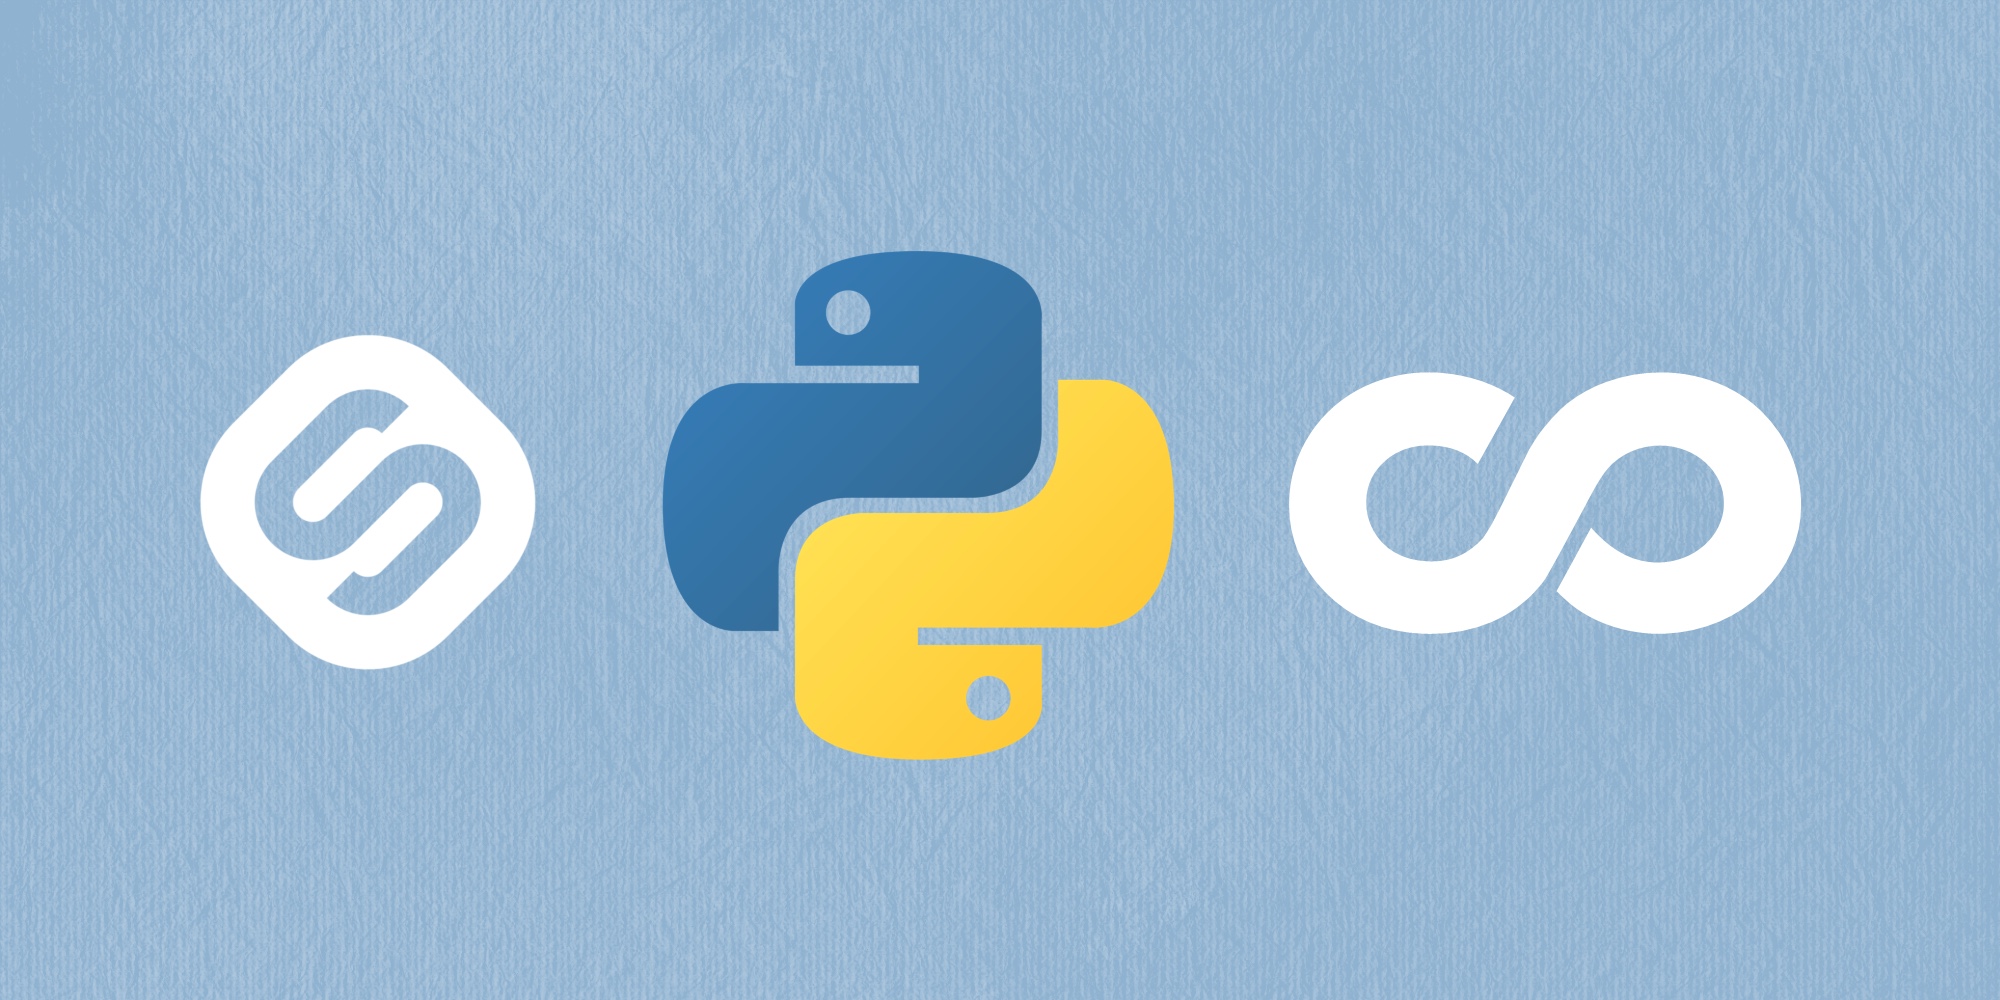 🐍 ТОП-20 бесплатных учебных курсов по Python для начинающих разработчиков